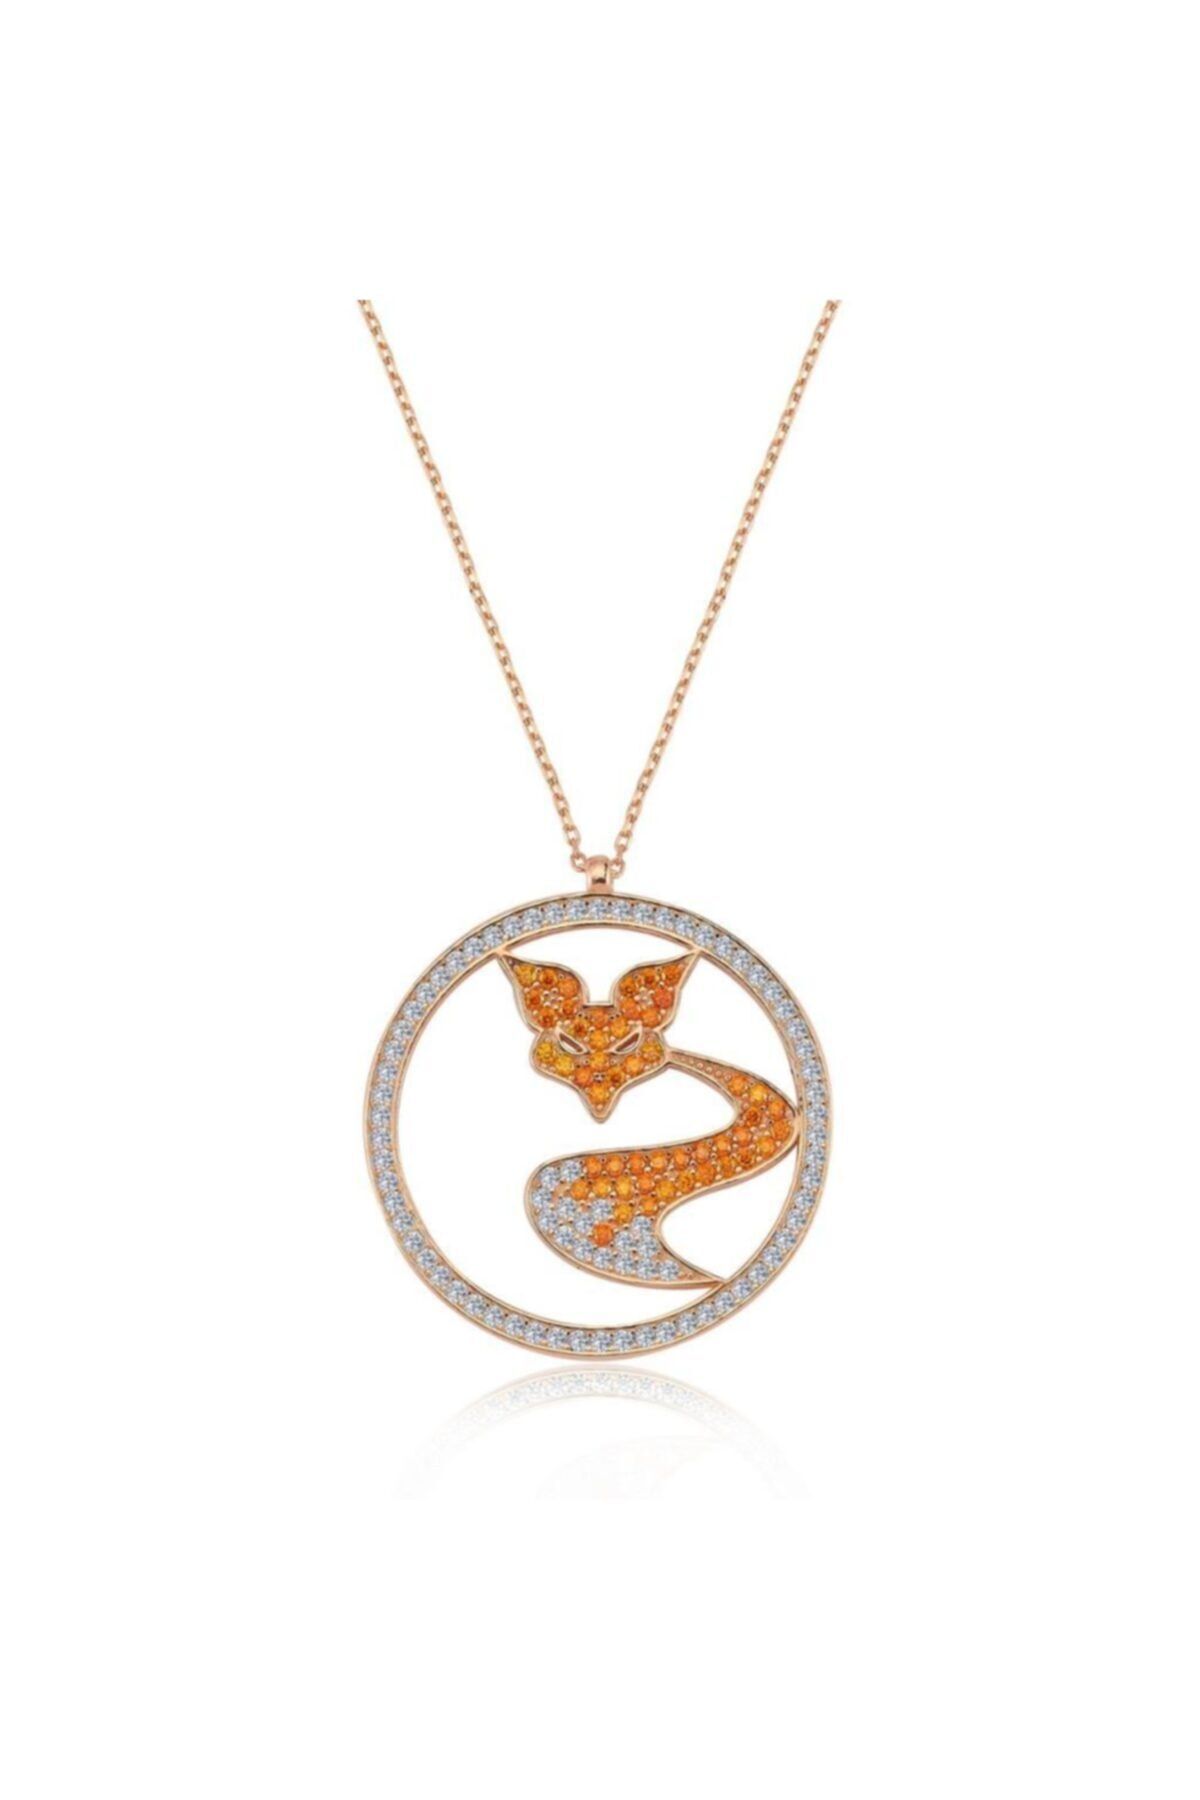 Mia Vento Orange Fox Rose Renk Gümüş Kolye